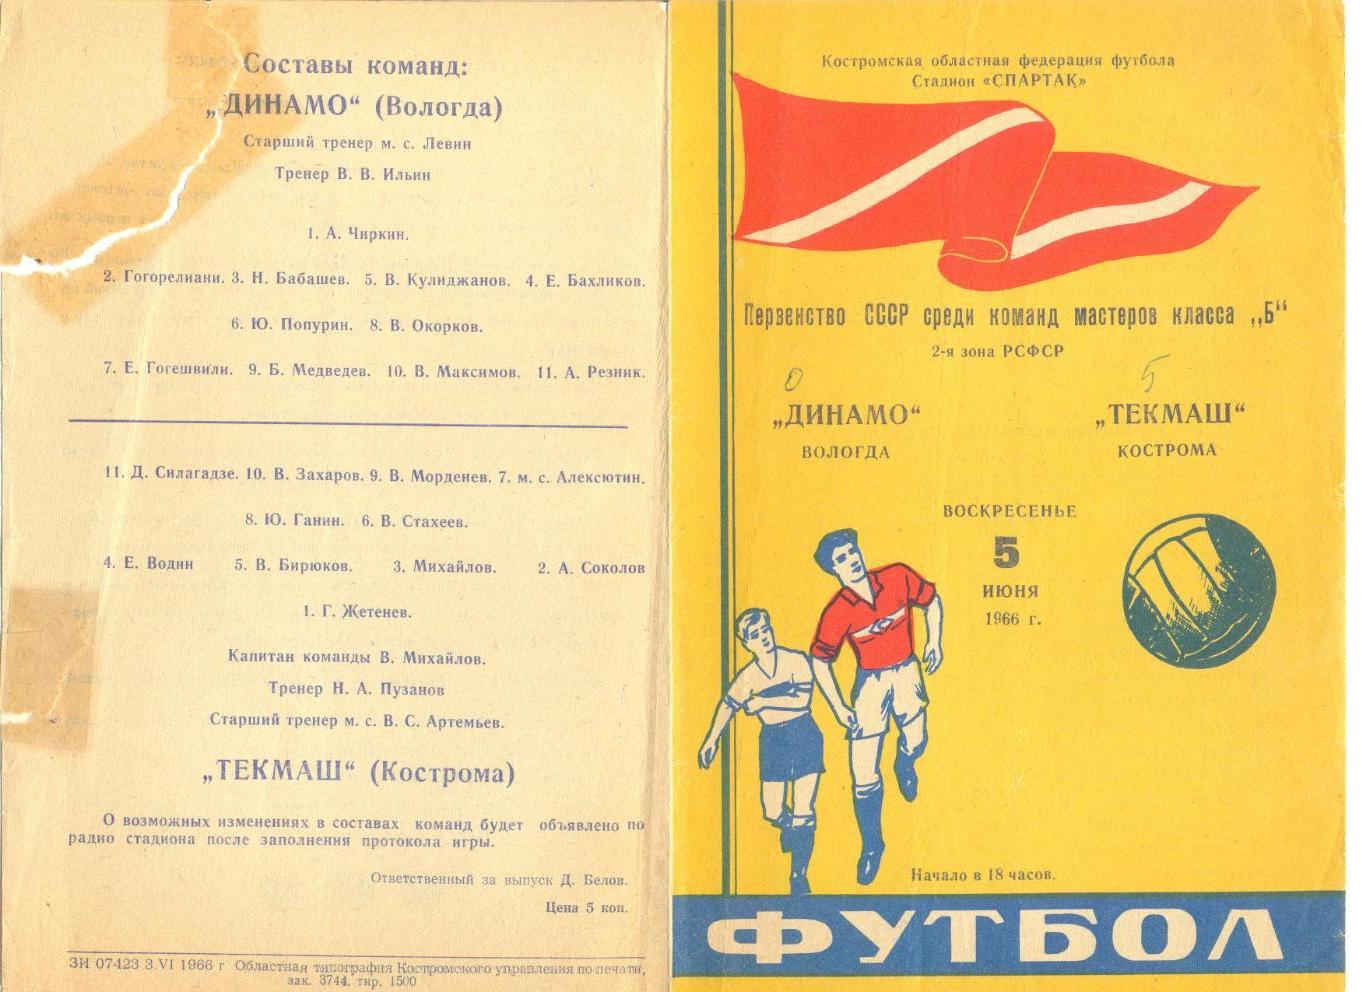 Текмаш Кострома - Динамо Вологда 05.06.1966 г.